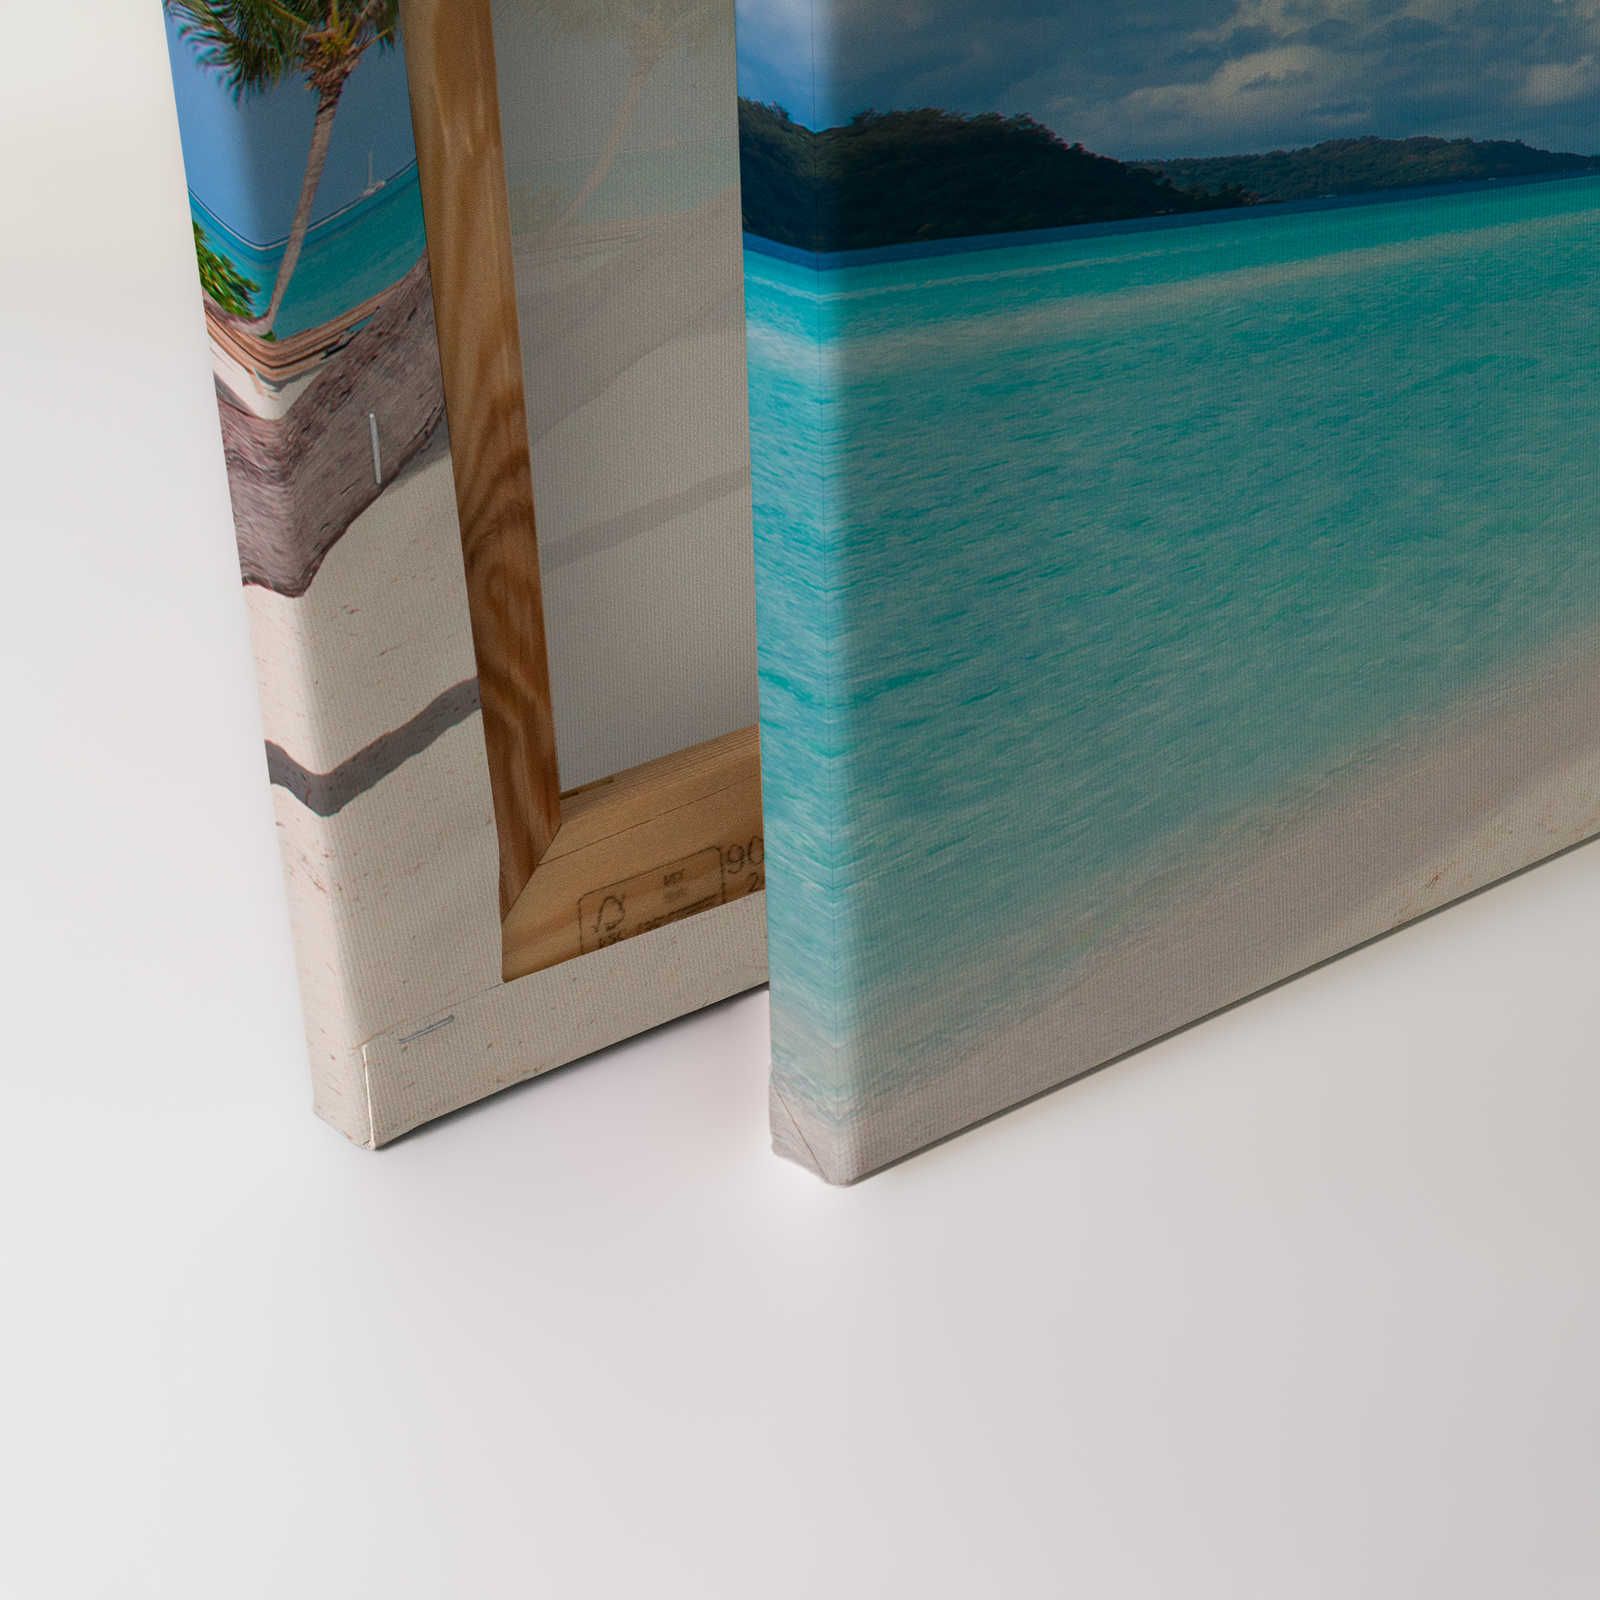             Strand mit Palme Leinwandbild und klarem Wasser – 1,20 m x 0,80 m
        